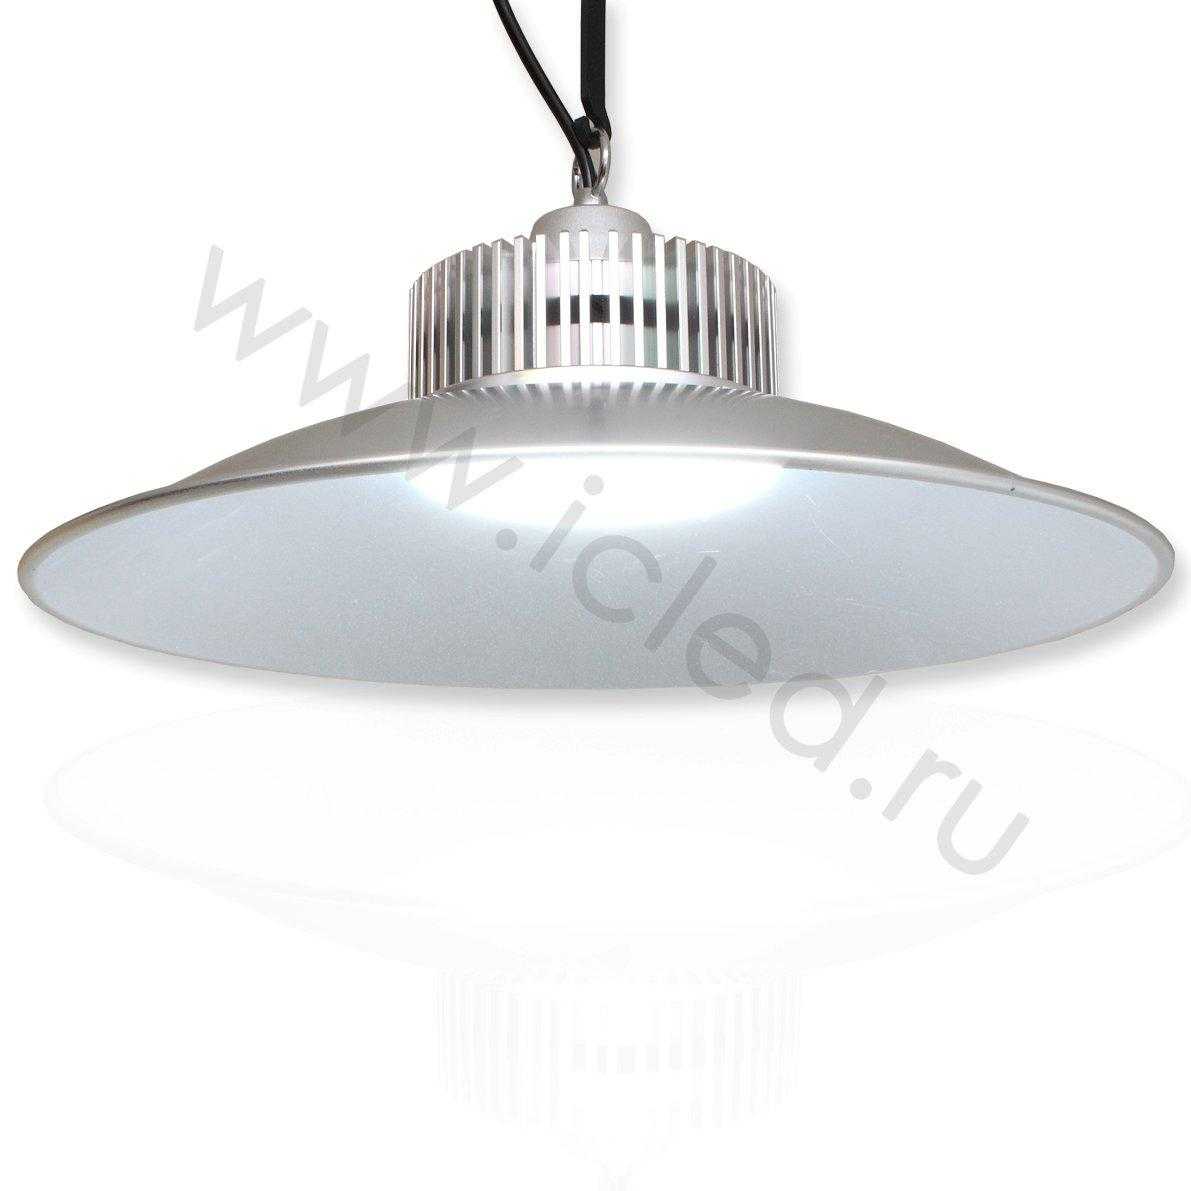 Промышленное и складское освещение Светодиодный светильник-колокол V21 (50W, рым-болт, white)